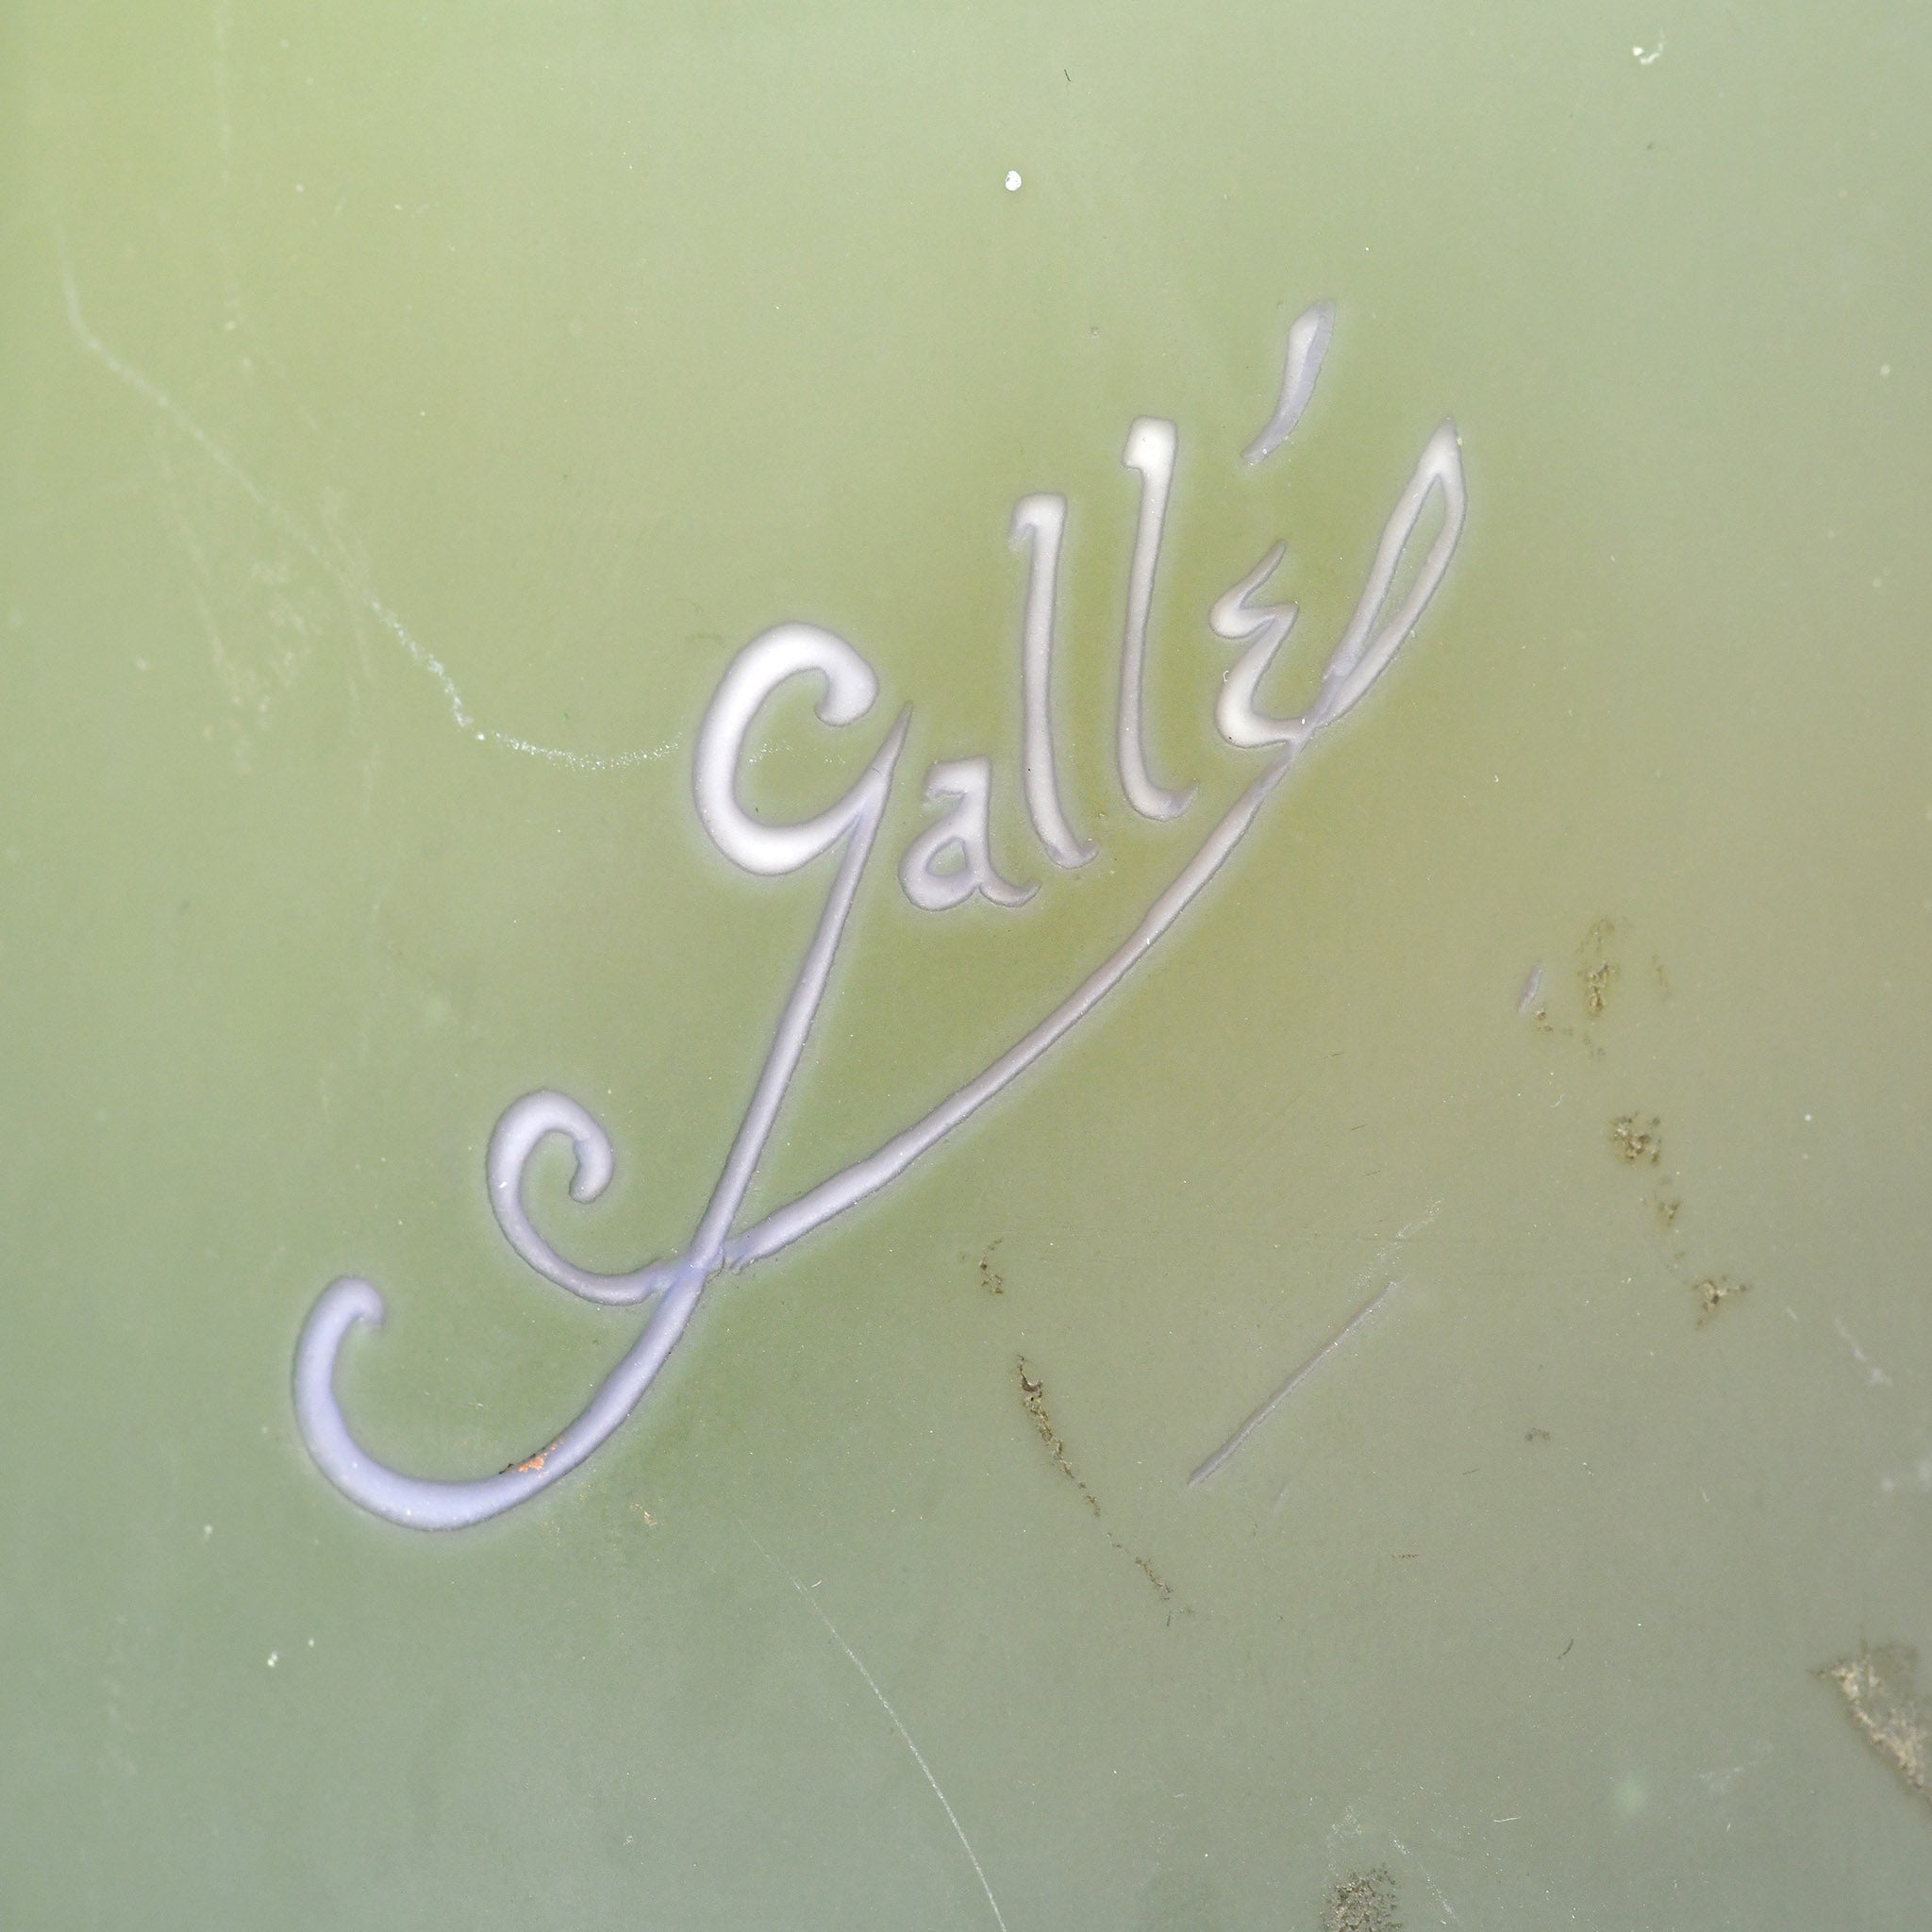 Émile Gallé & the Timeless Galle Vase: Art Nouveau's Masterpiece